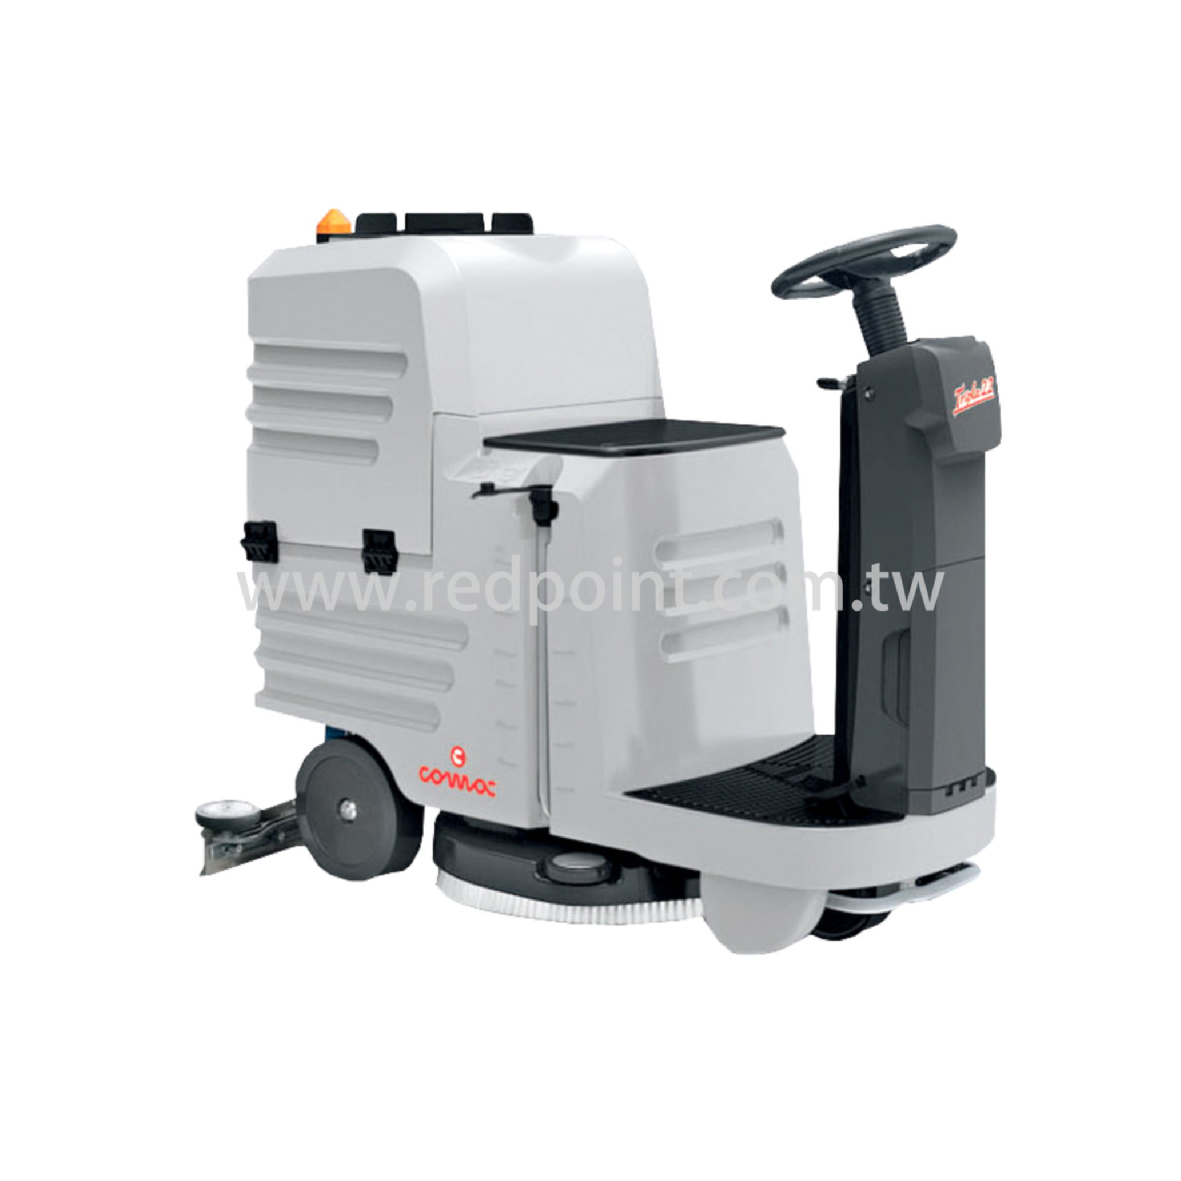 IN55BTD 駕駛型全自動洗地機,IN55BTD,駕駛型,全自動洗地機,洗地機